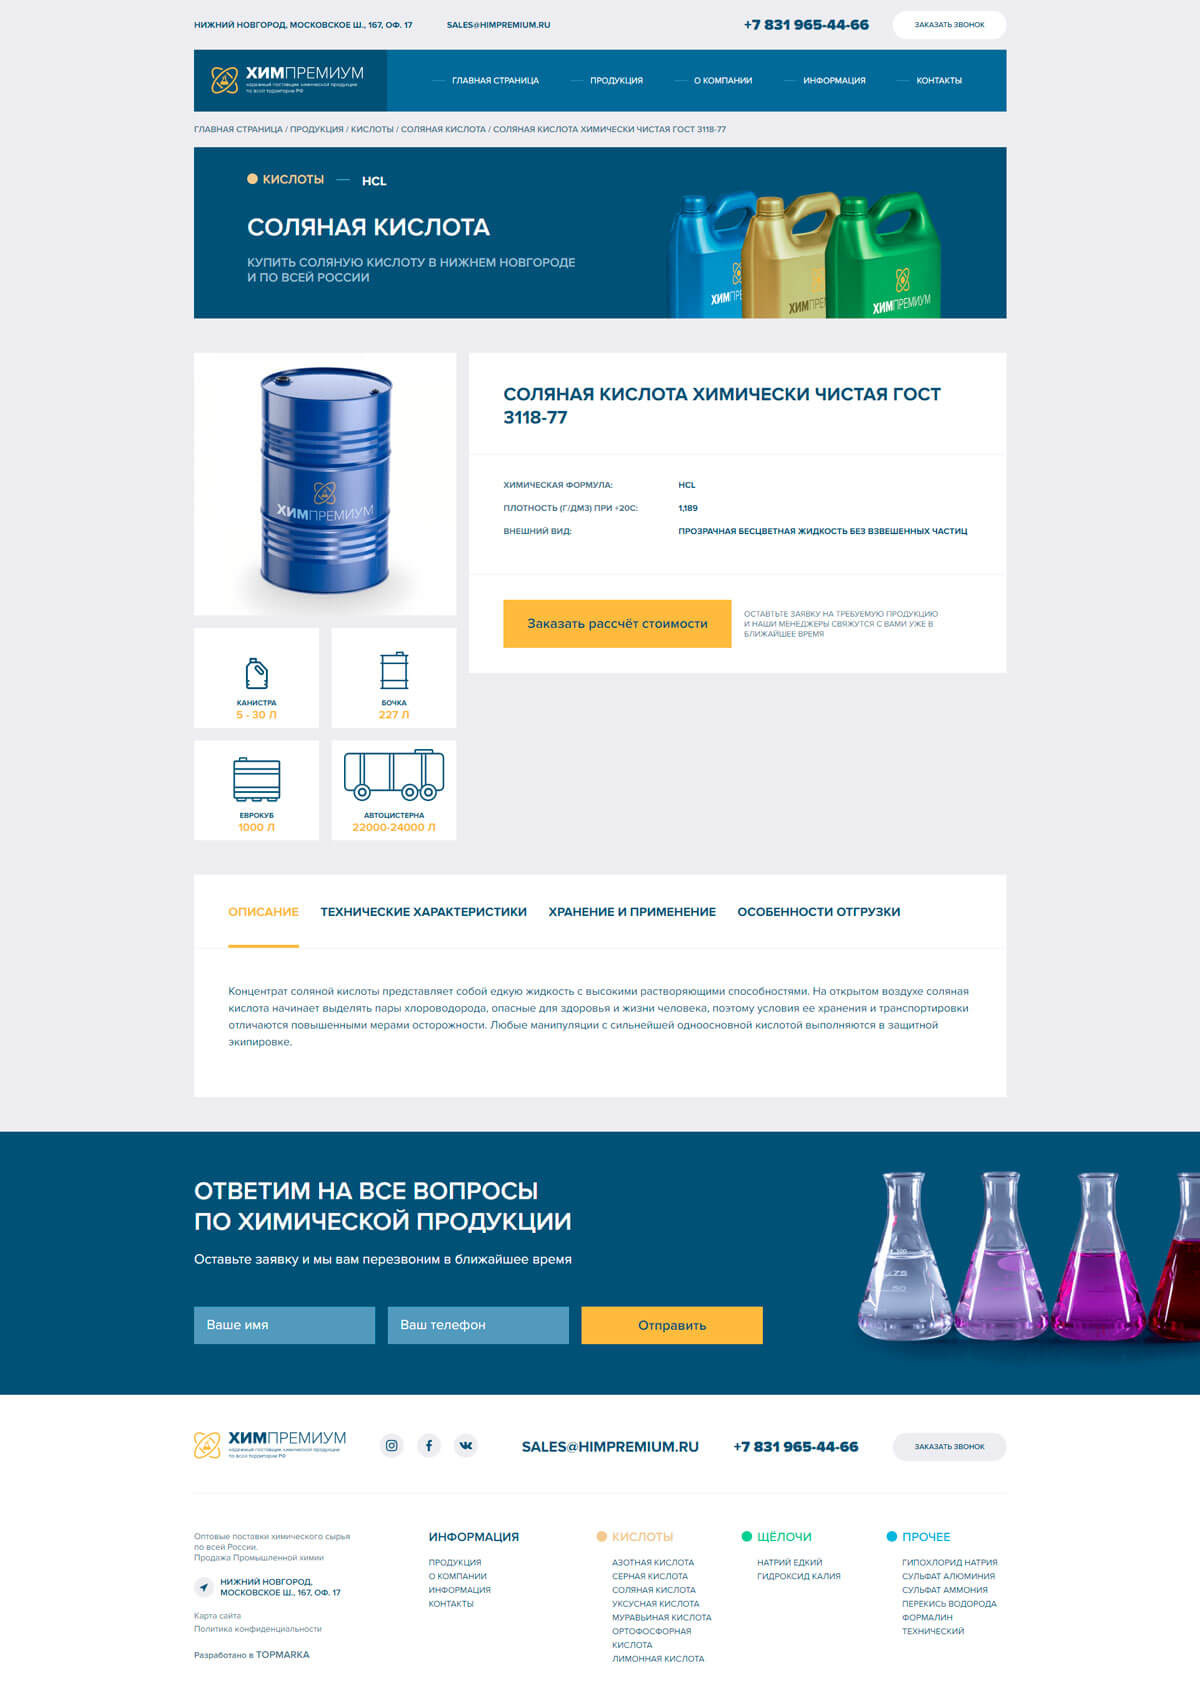 Создание сайта для «ХимПремиум» - продажа промышленной химии